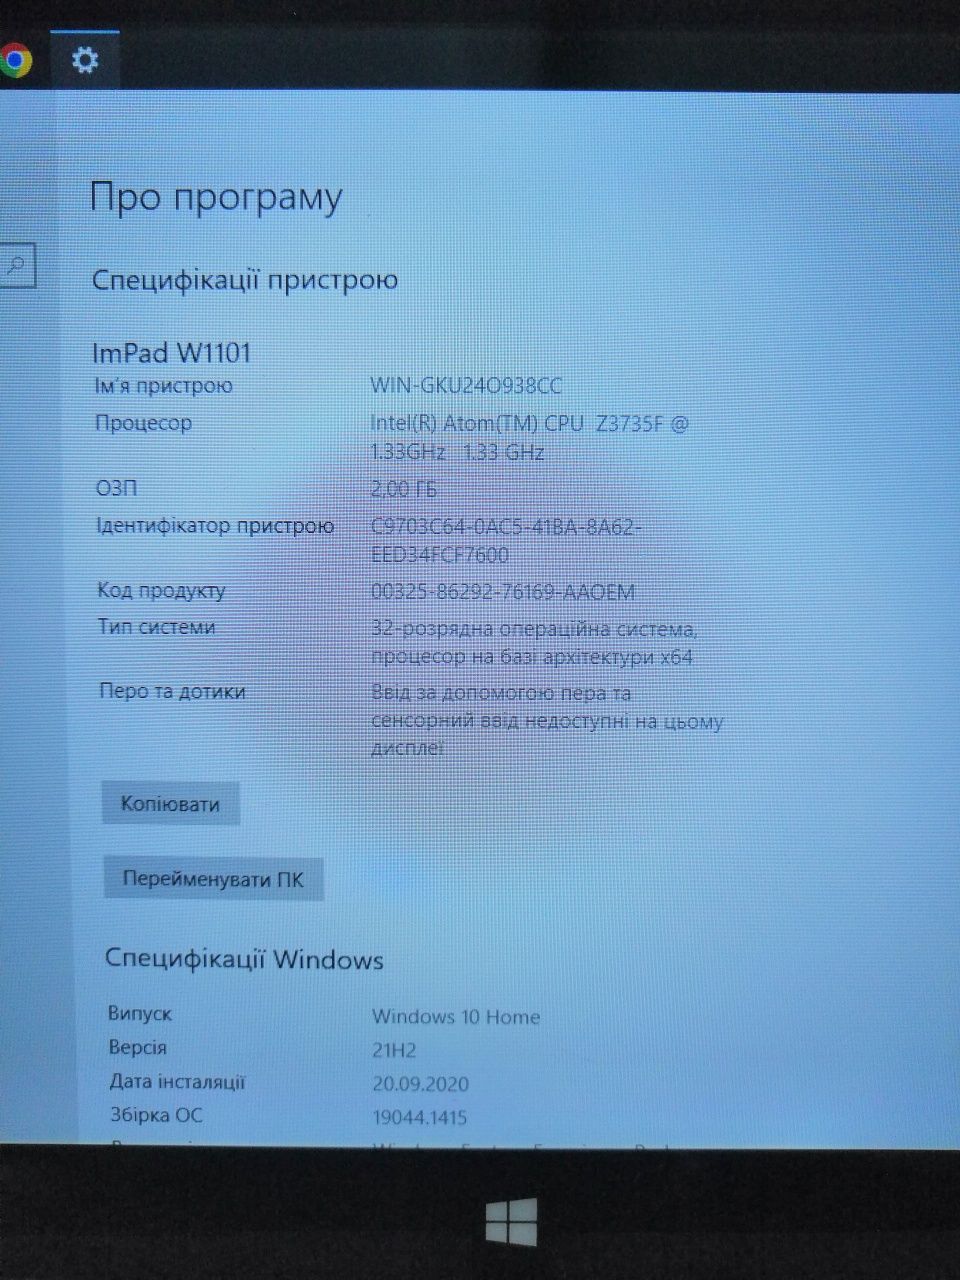 Планшет Impression ImPAD W1101 з Windows 10, робочий, з проблемами